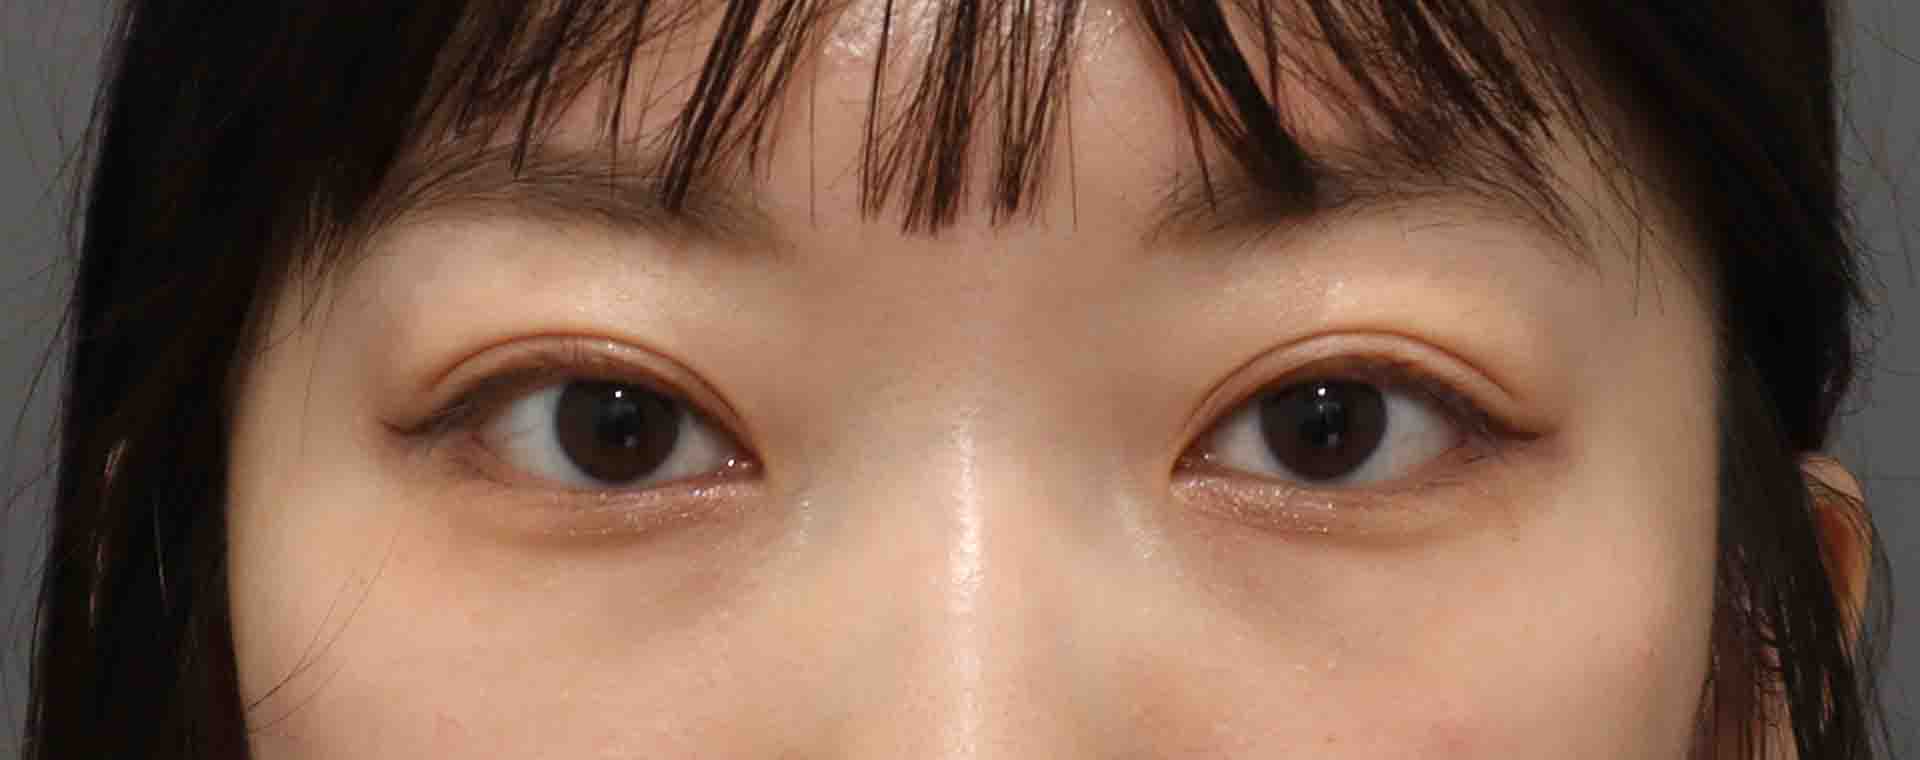 雙眼皮手術-雙眼皮手術推薦醫師-縫雙眼皮後遺症-割雙眼皮恢復期-割雙眼皮價錢-雙眼皮手術恢復-台北割雙眼皮價錢